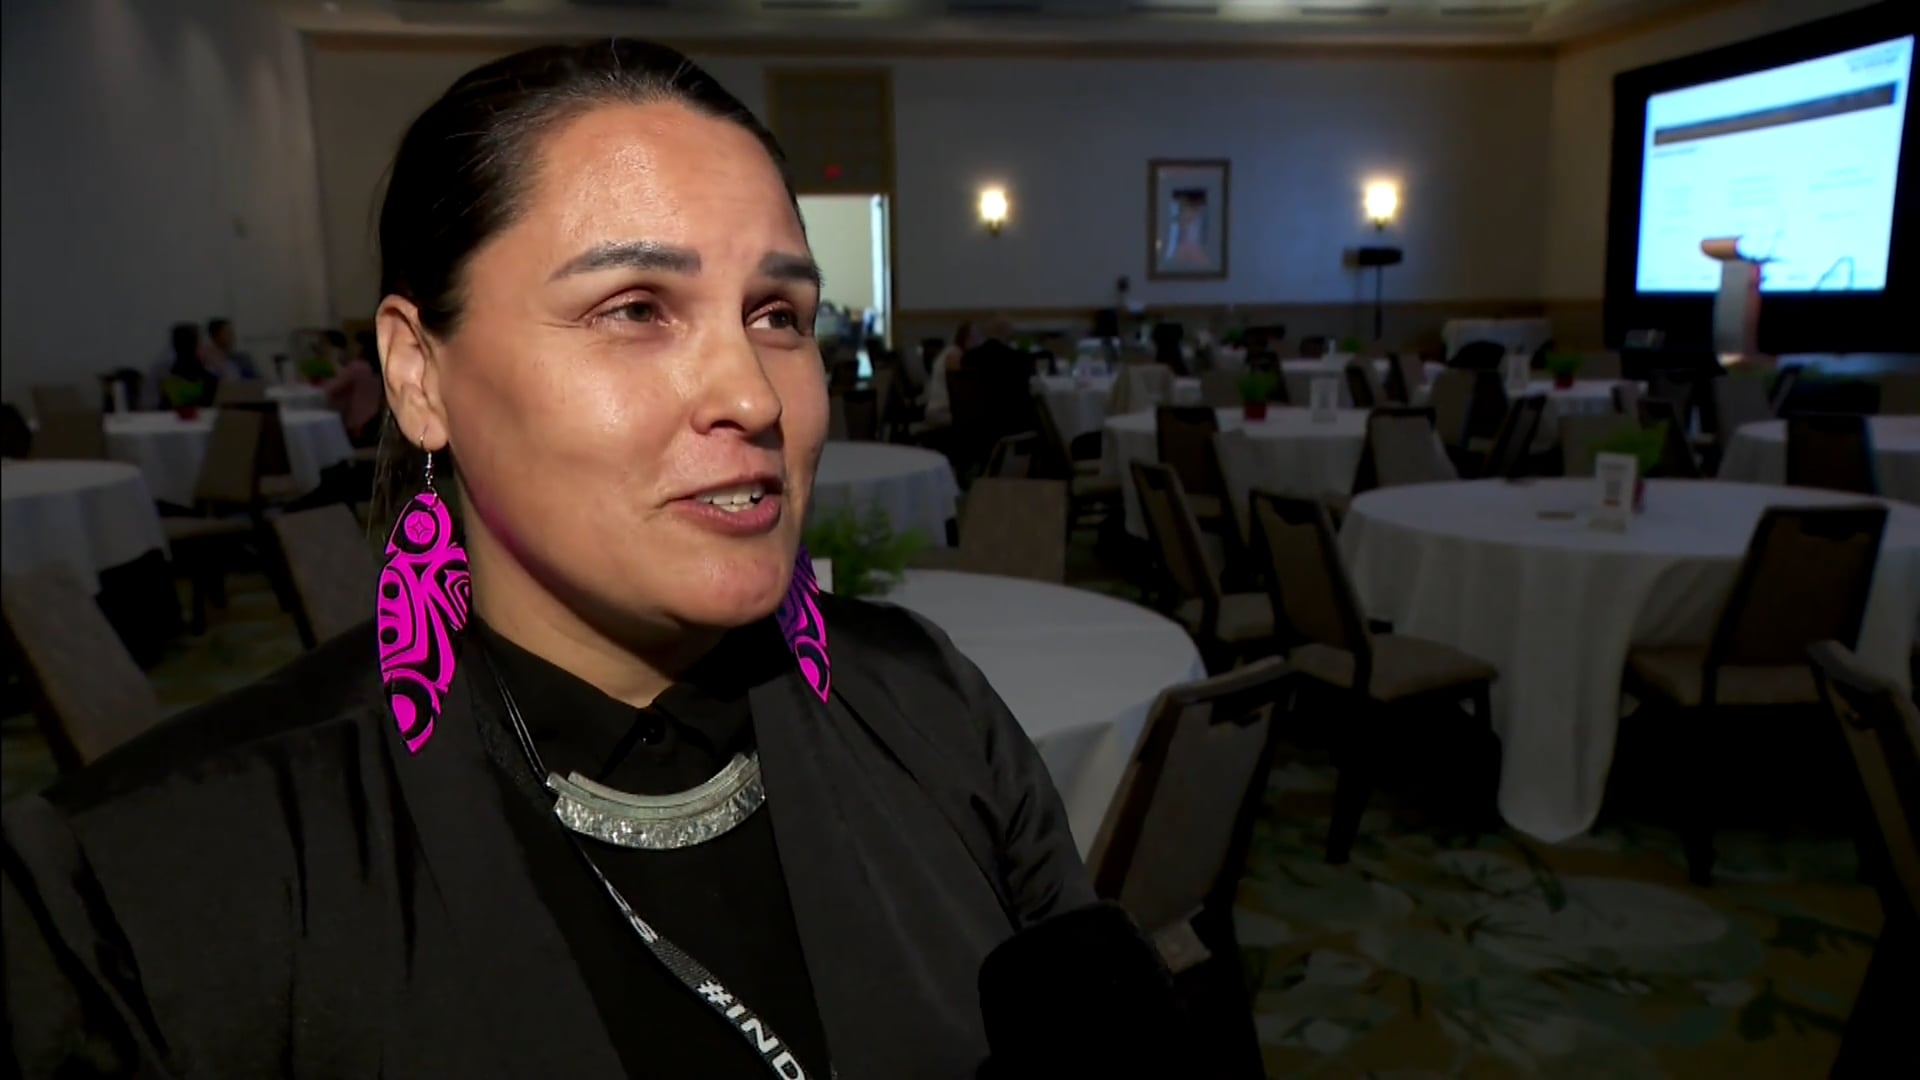 Indigenomics DESIGN conference is underway in Vancouver APTN News